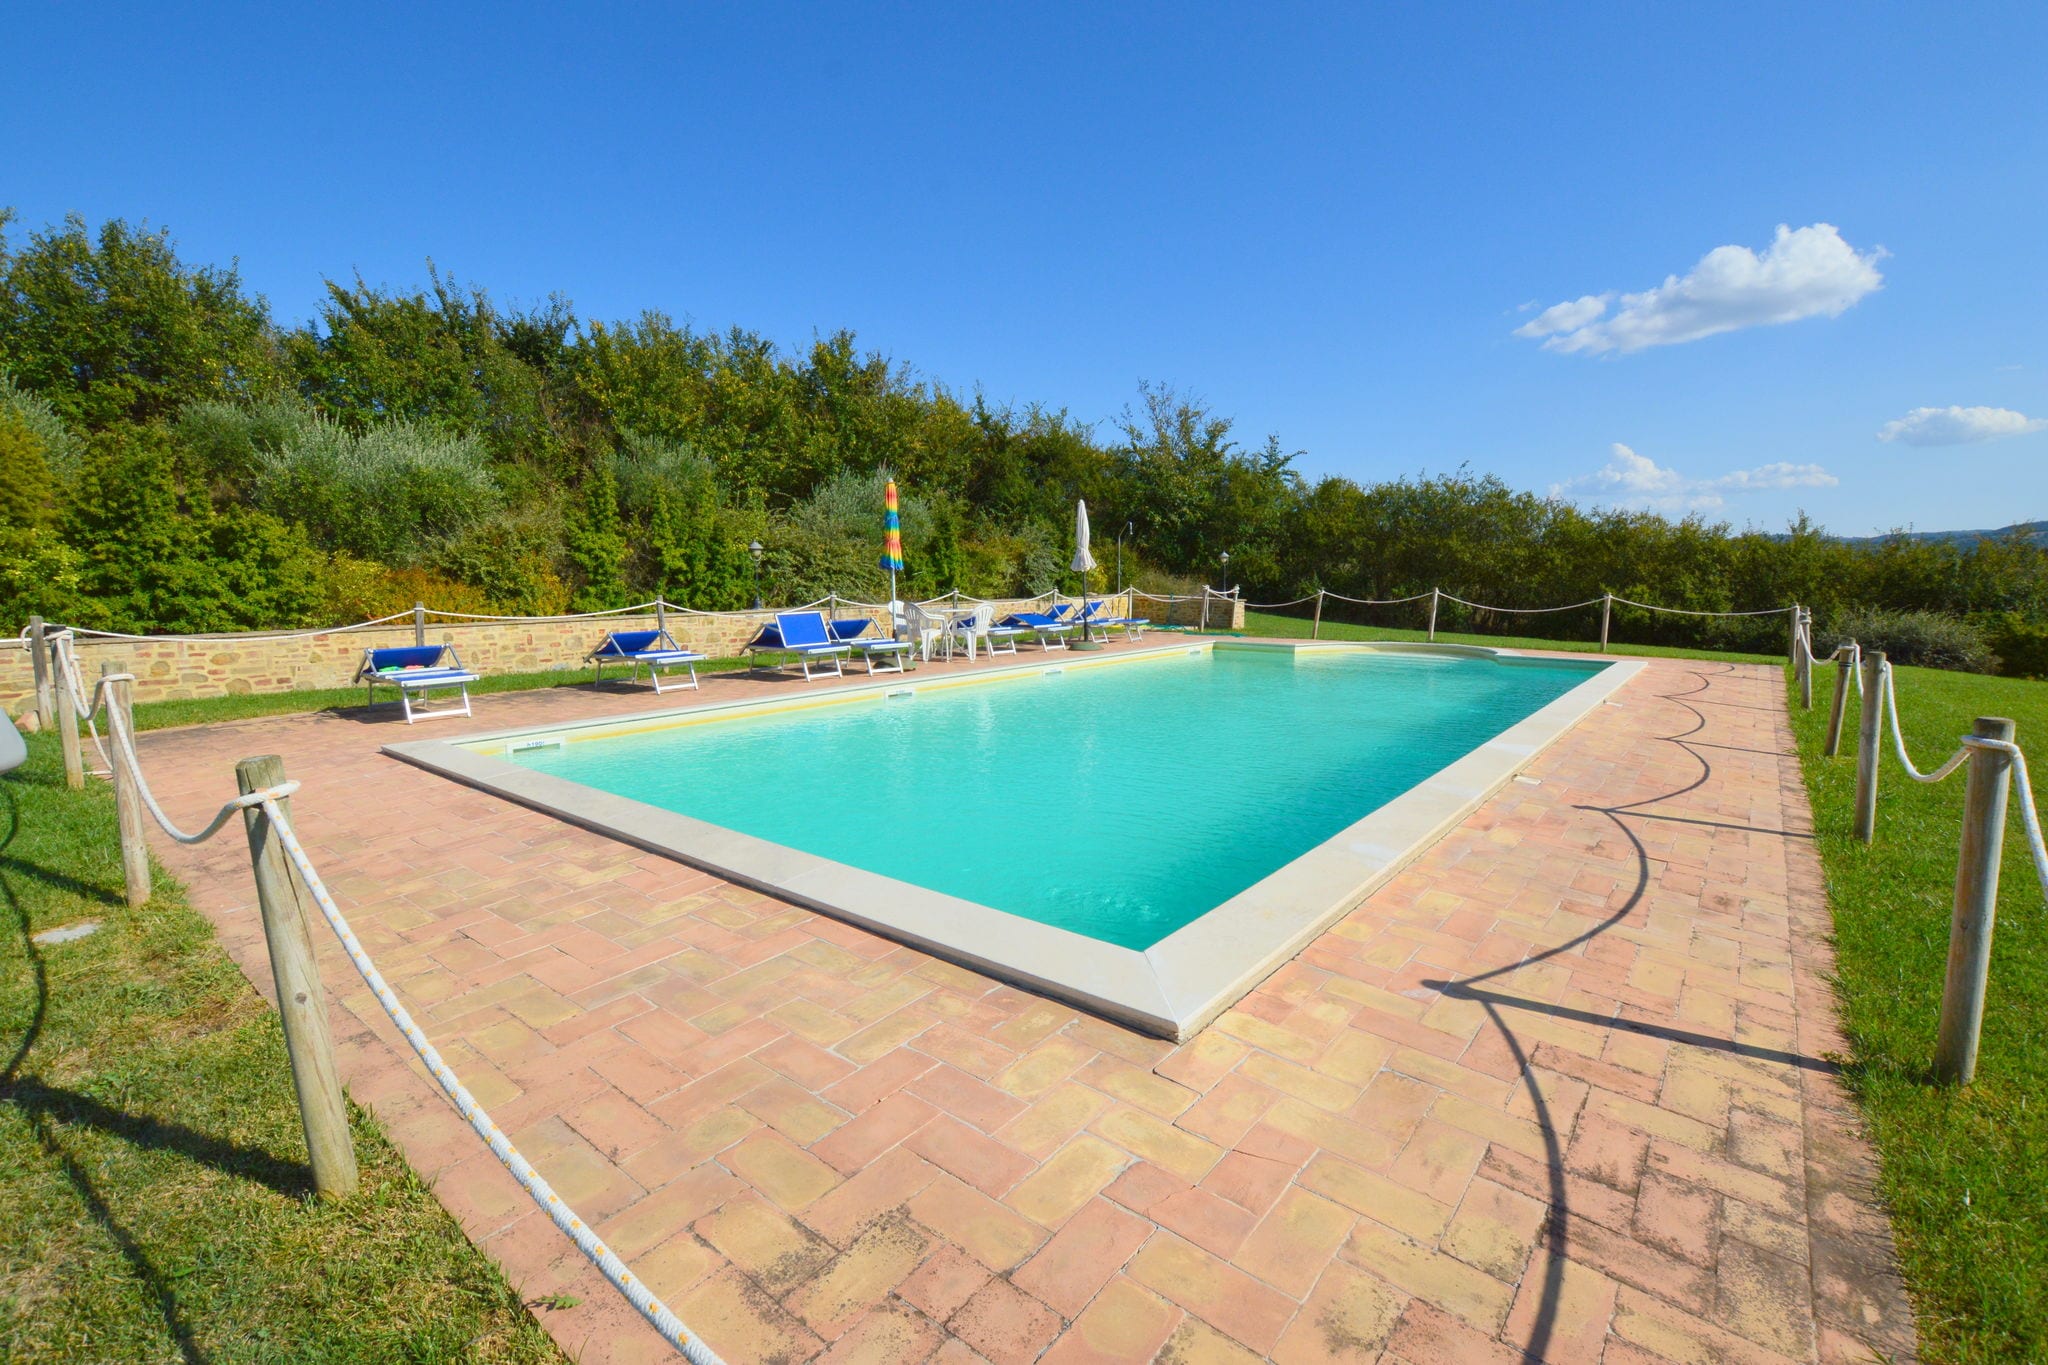 Goed onderhouden vakantiehuis in rustieke stijl met grote tuin en privézwembad